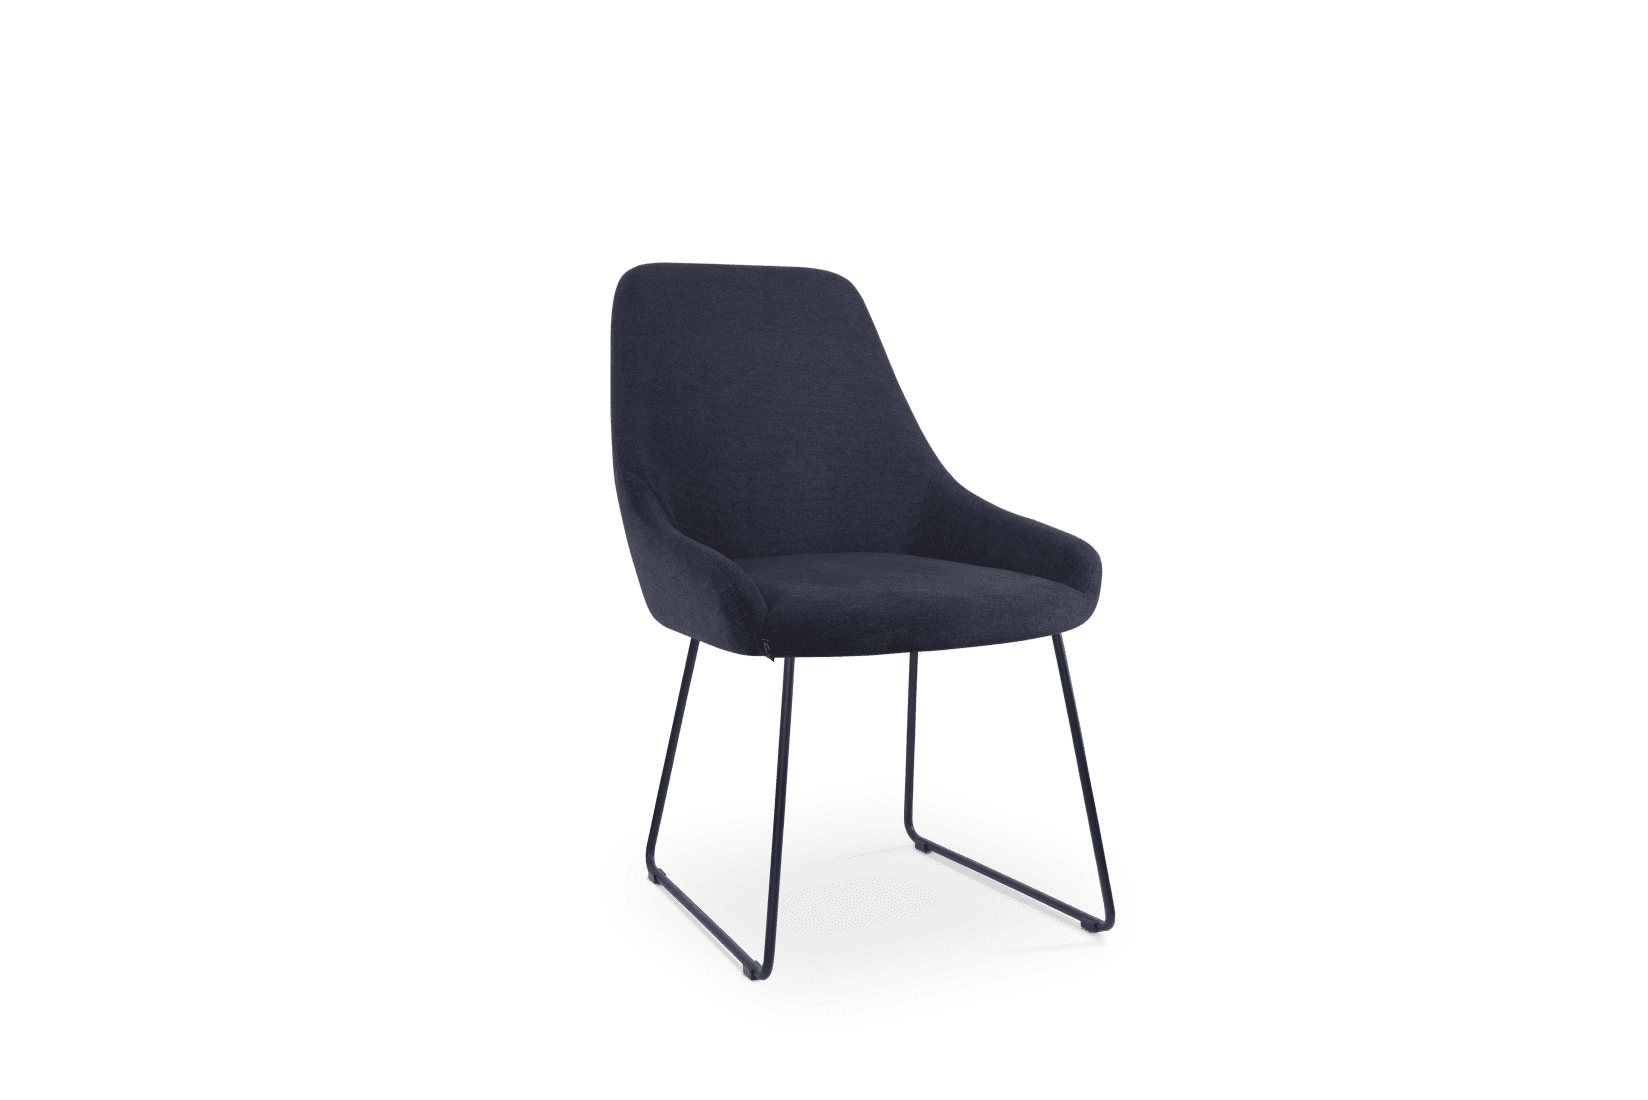 2. Premier chair - sled nocushion